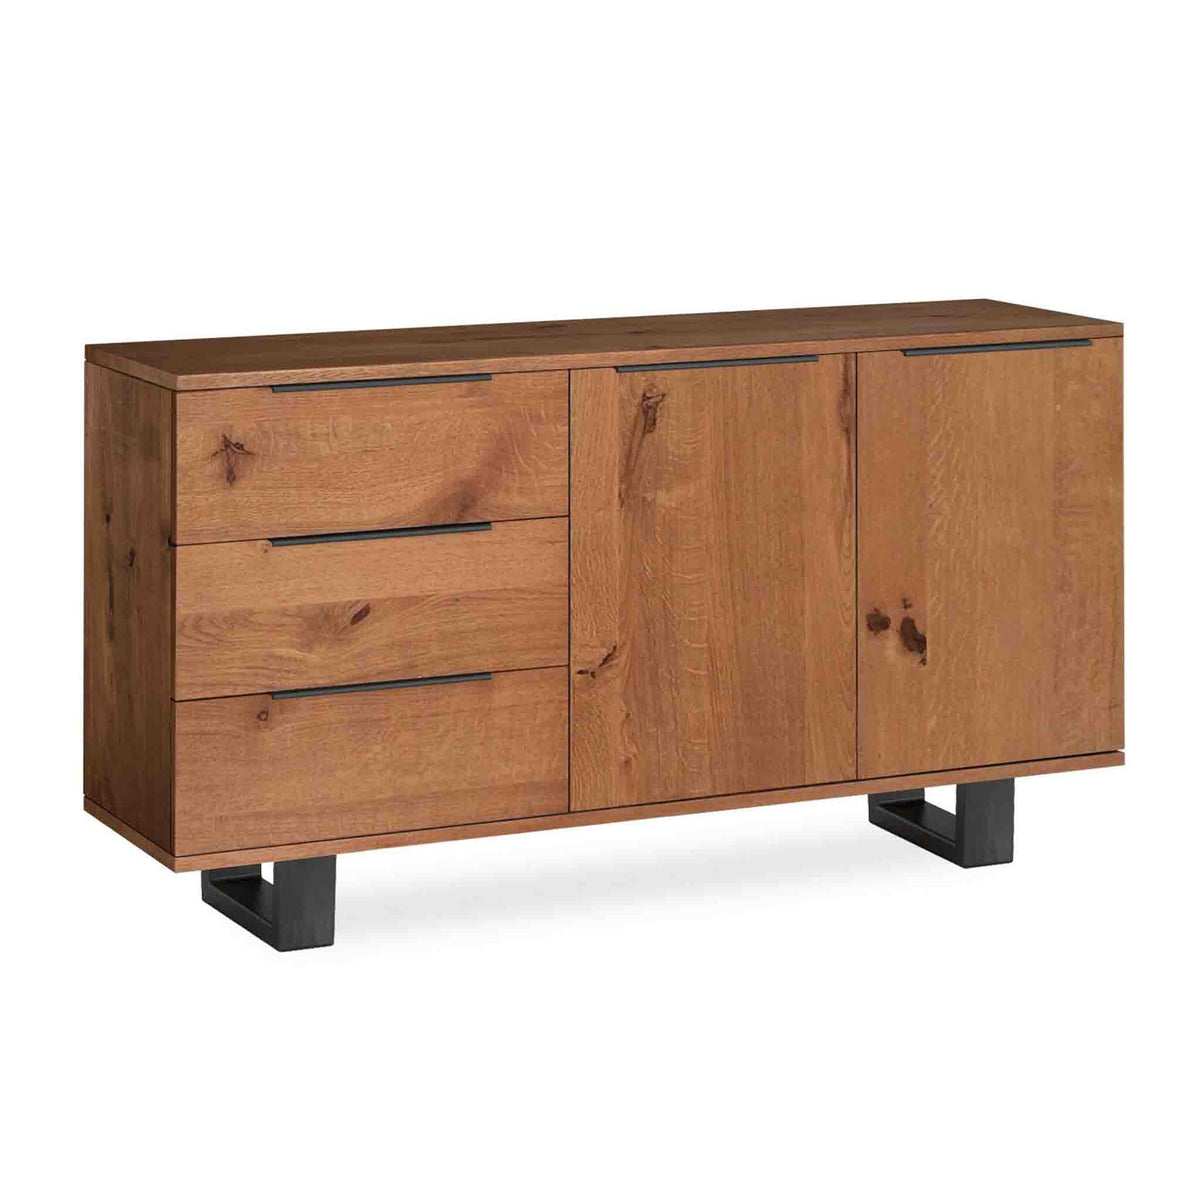 Oak Mill Small Sideboard - Metal Base - Waxed Oak by Roseland Furniture